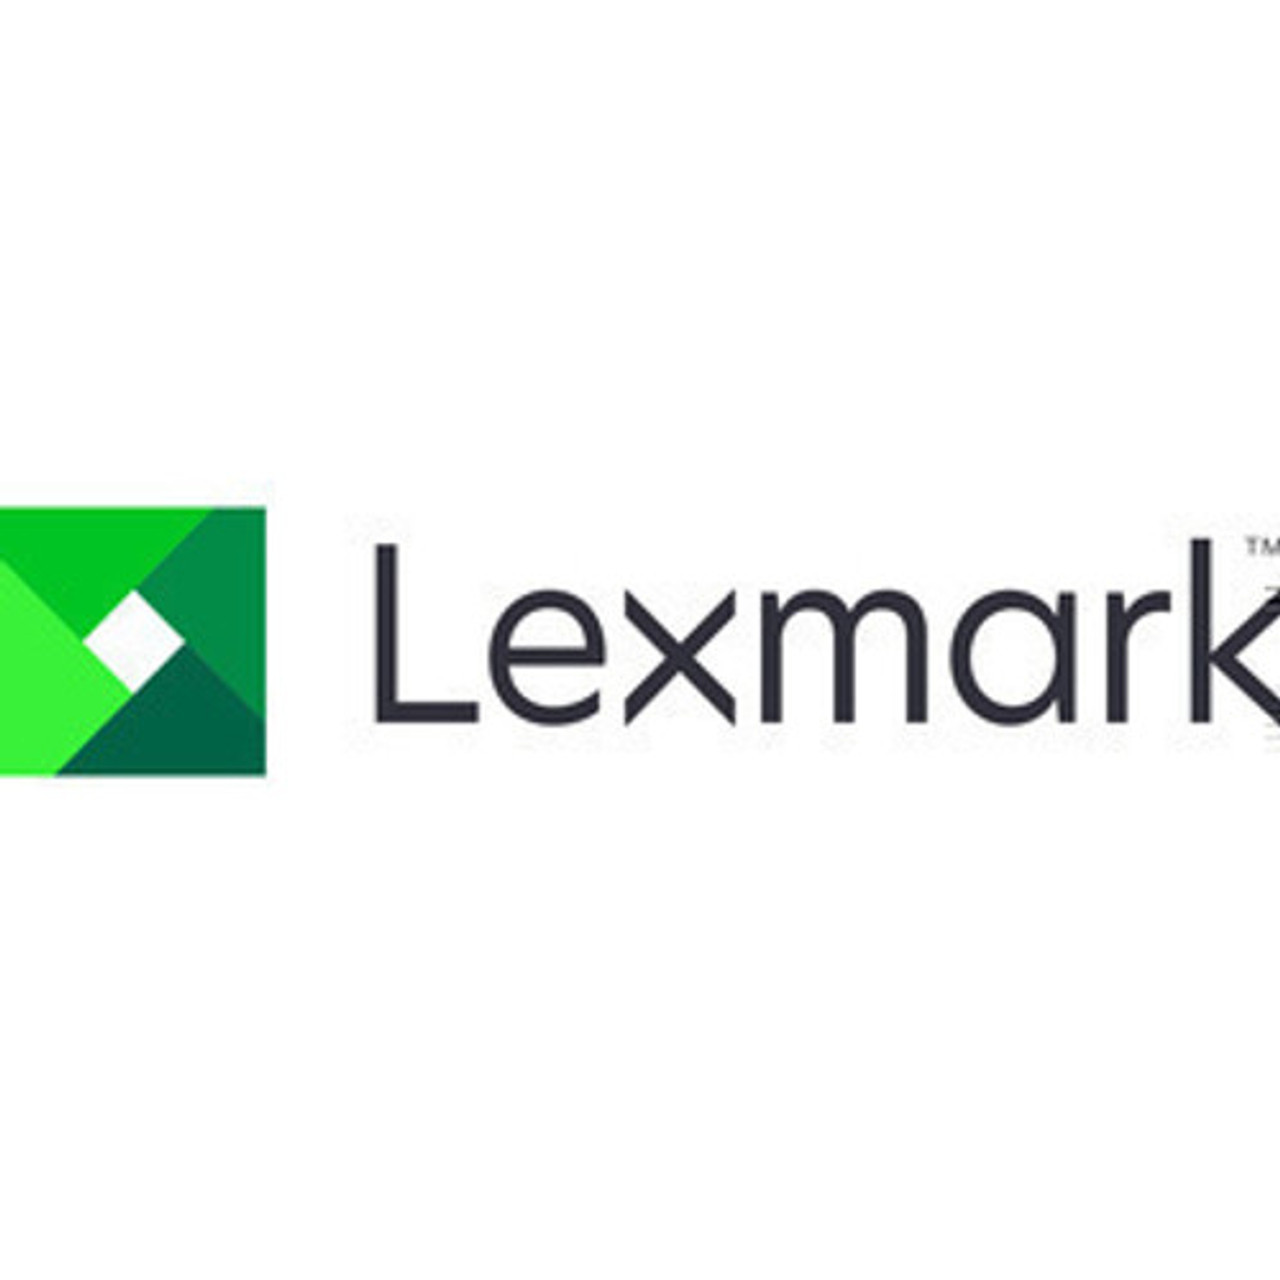 Lexmark 5YR PARTS ONLY MX532   SVCS - 2375037